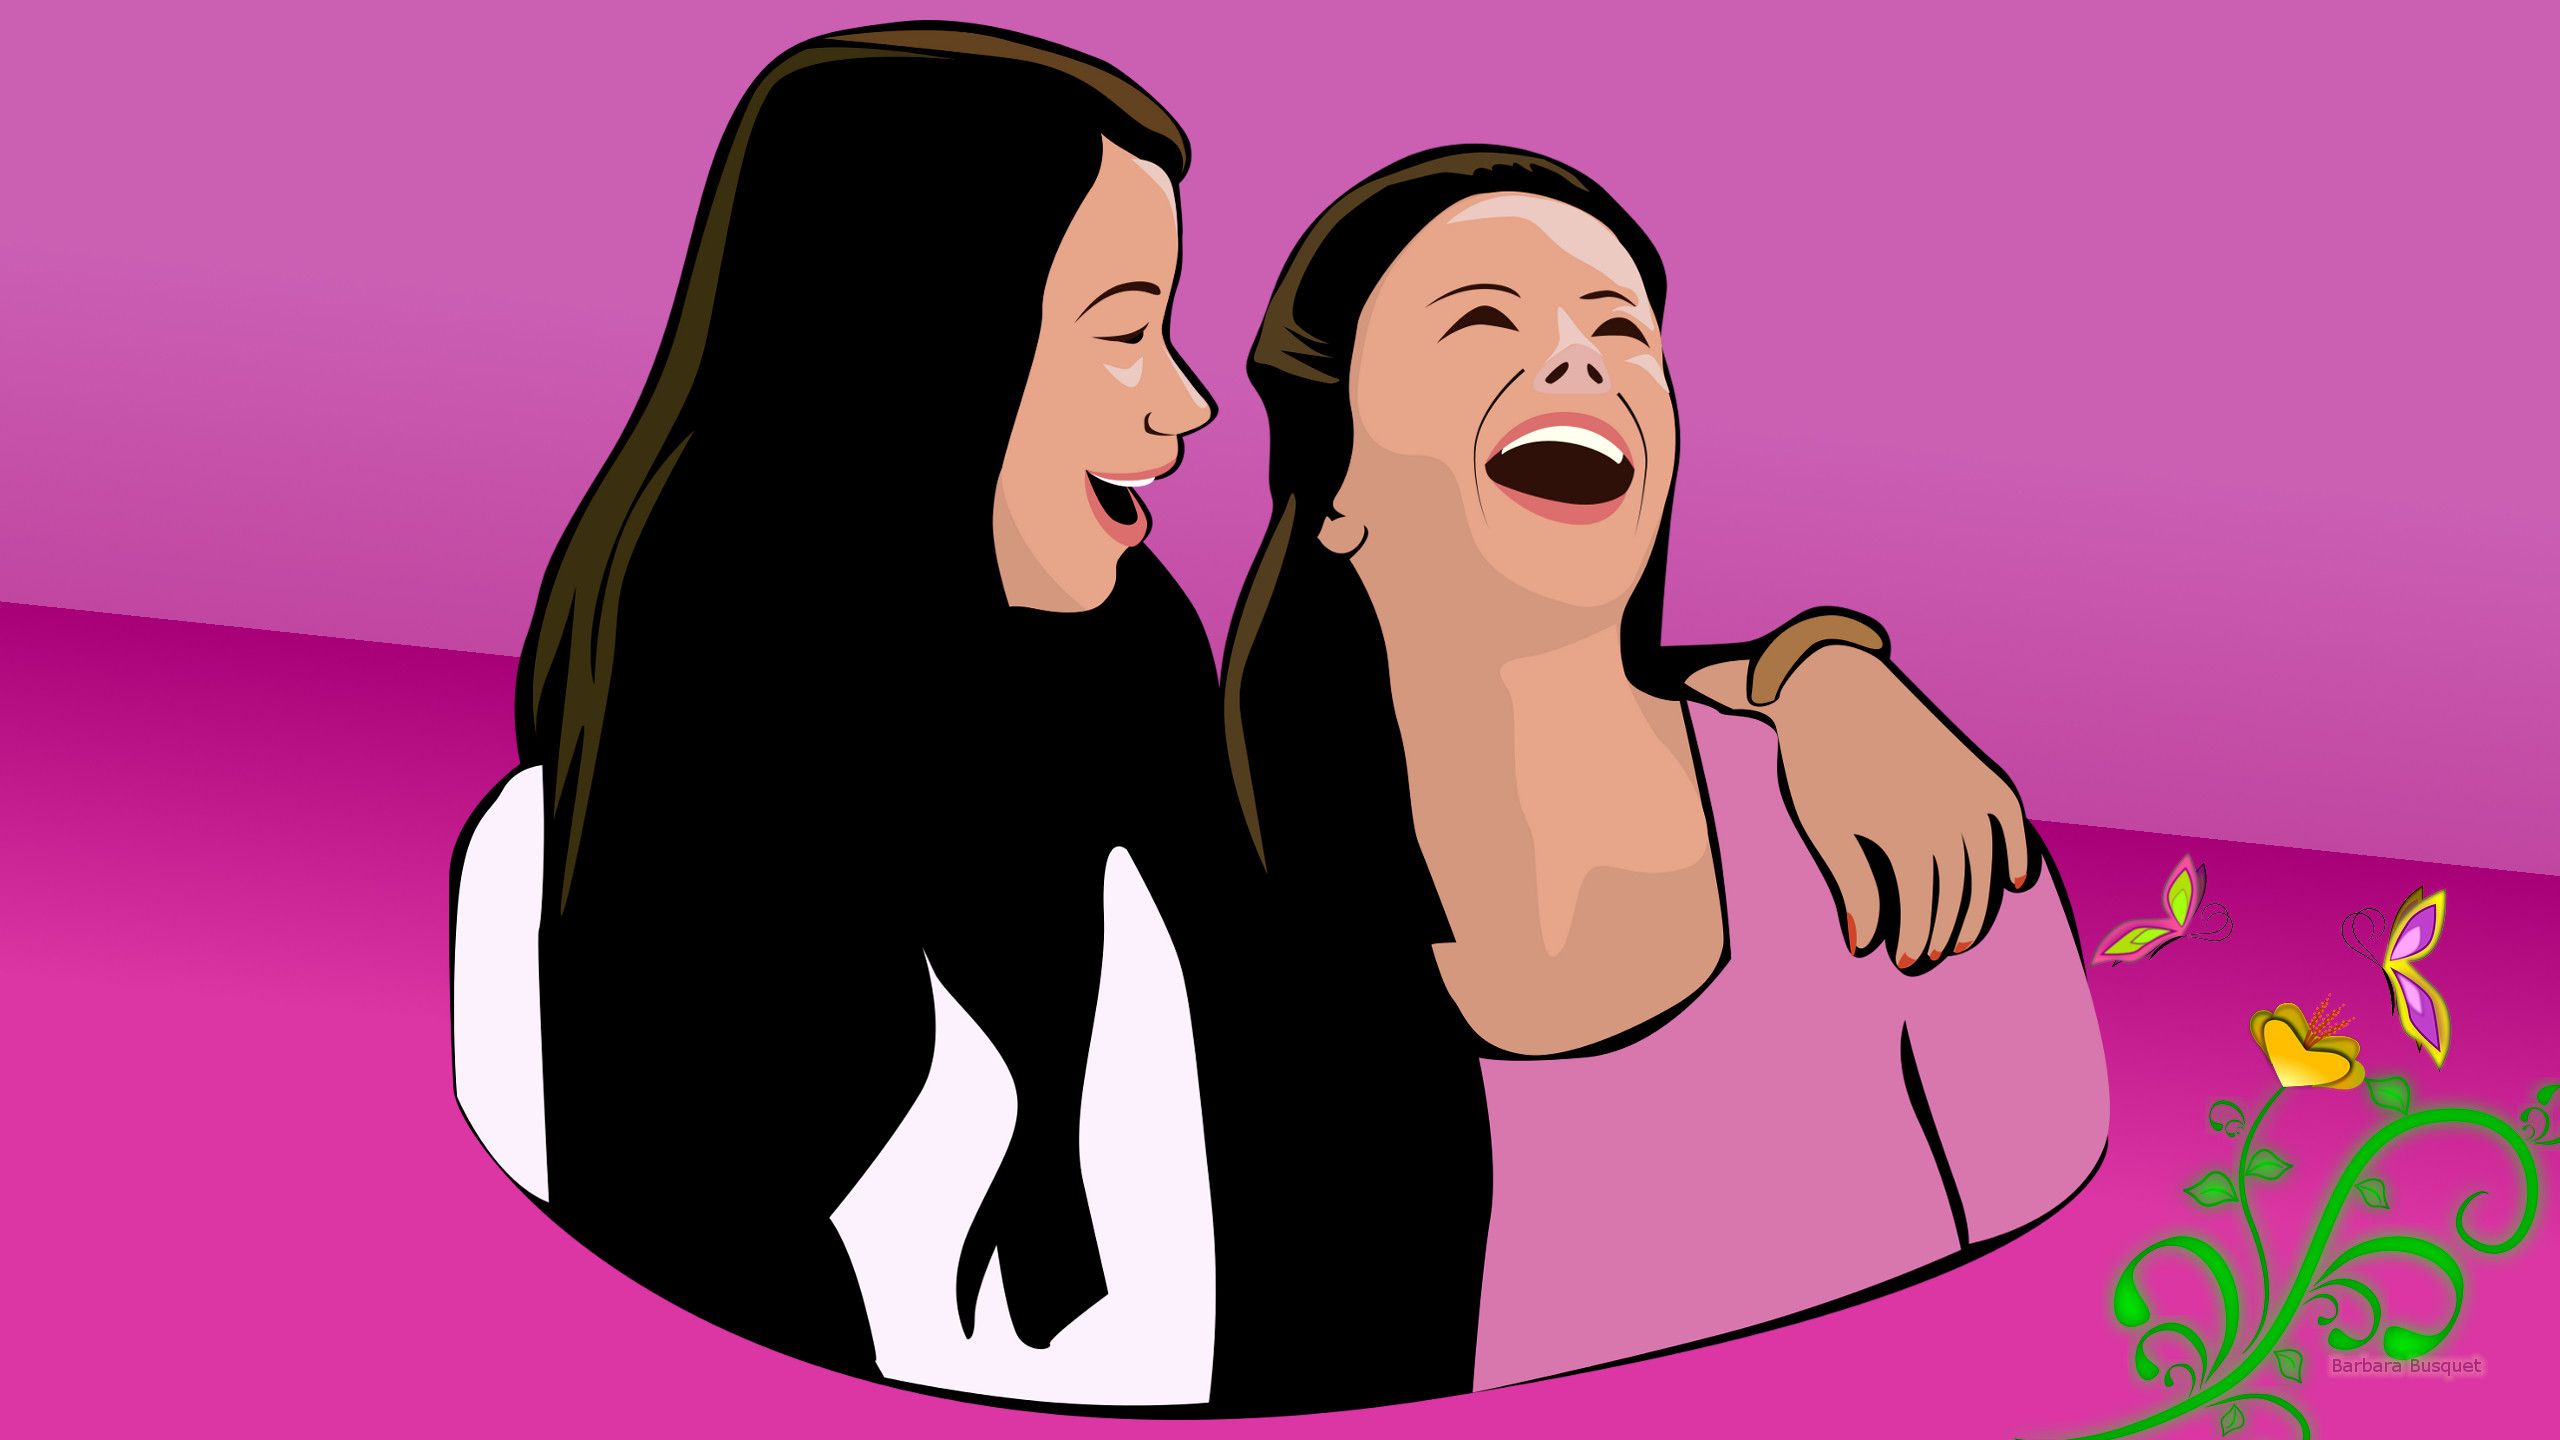 Friends forever girls laughing .barbarashdwallpaper.com